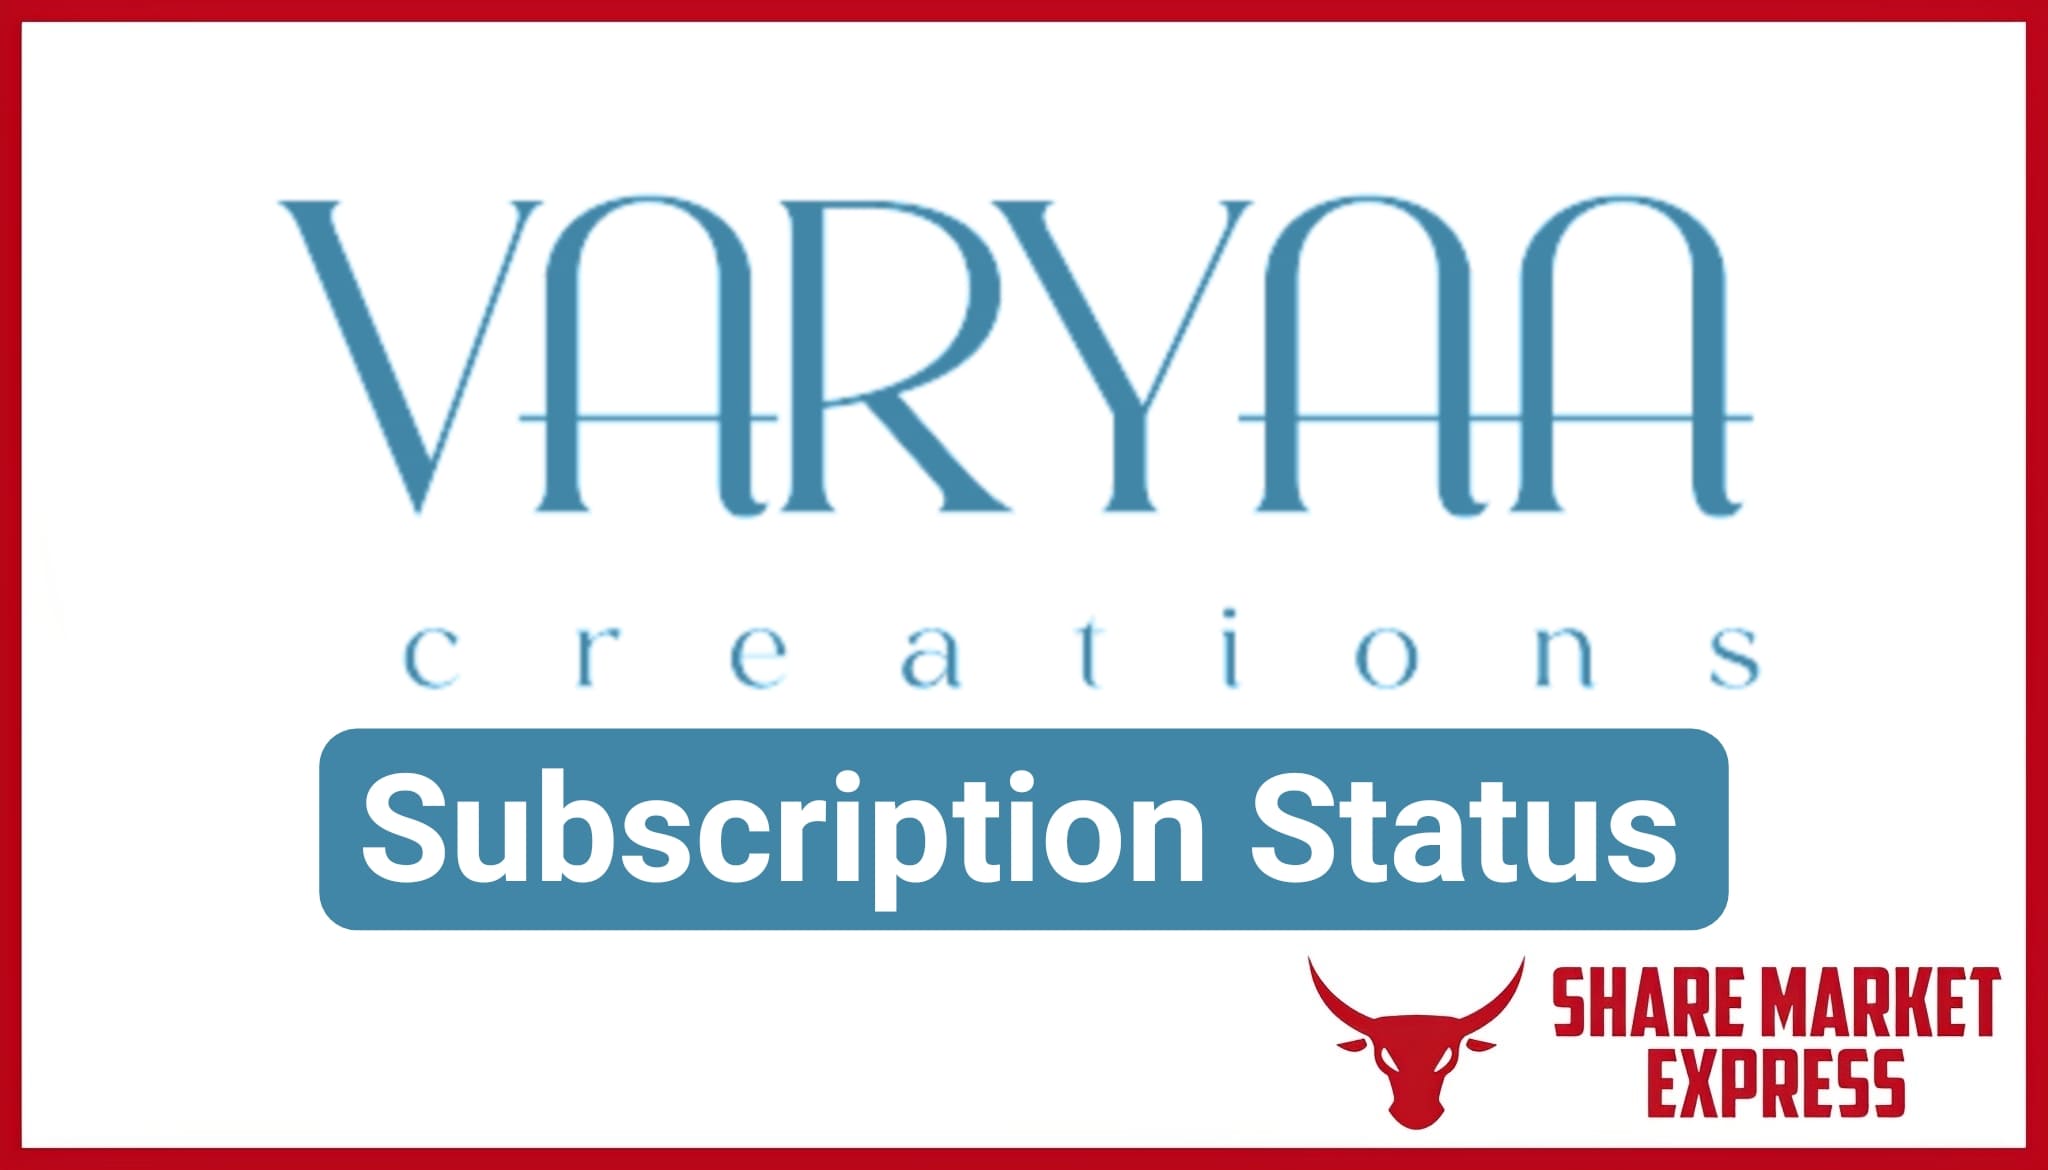 Varyaa Creations IPO Subscription Status